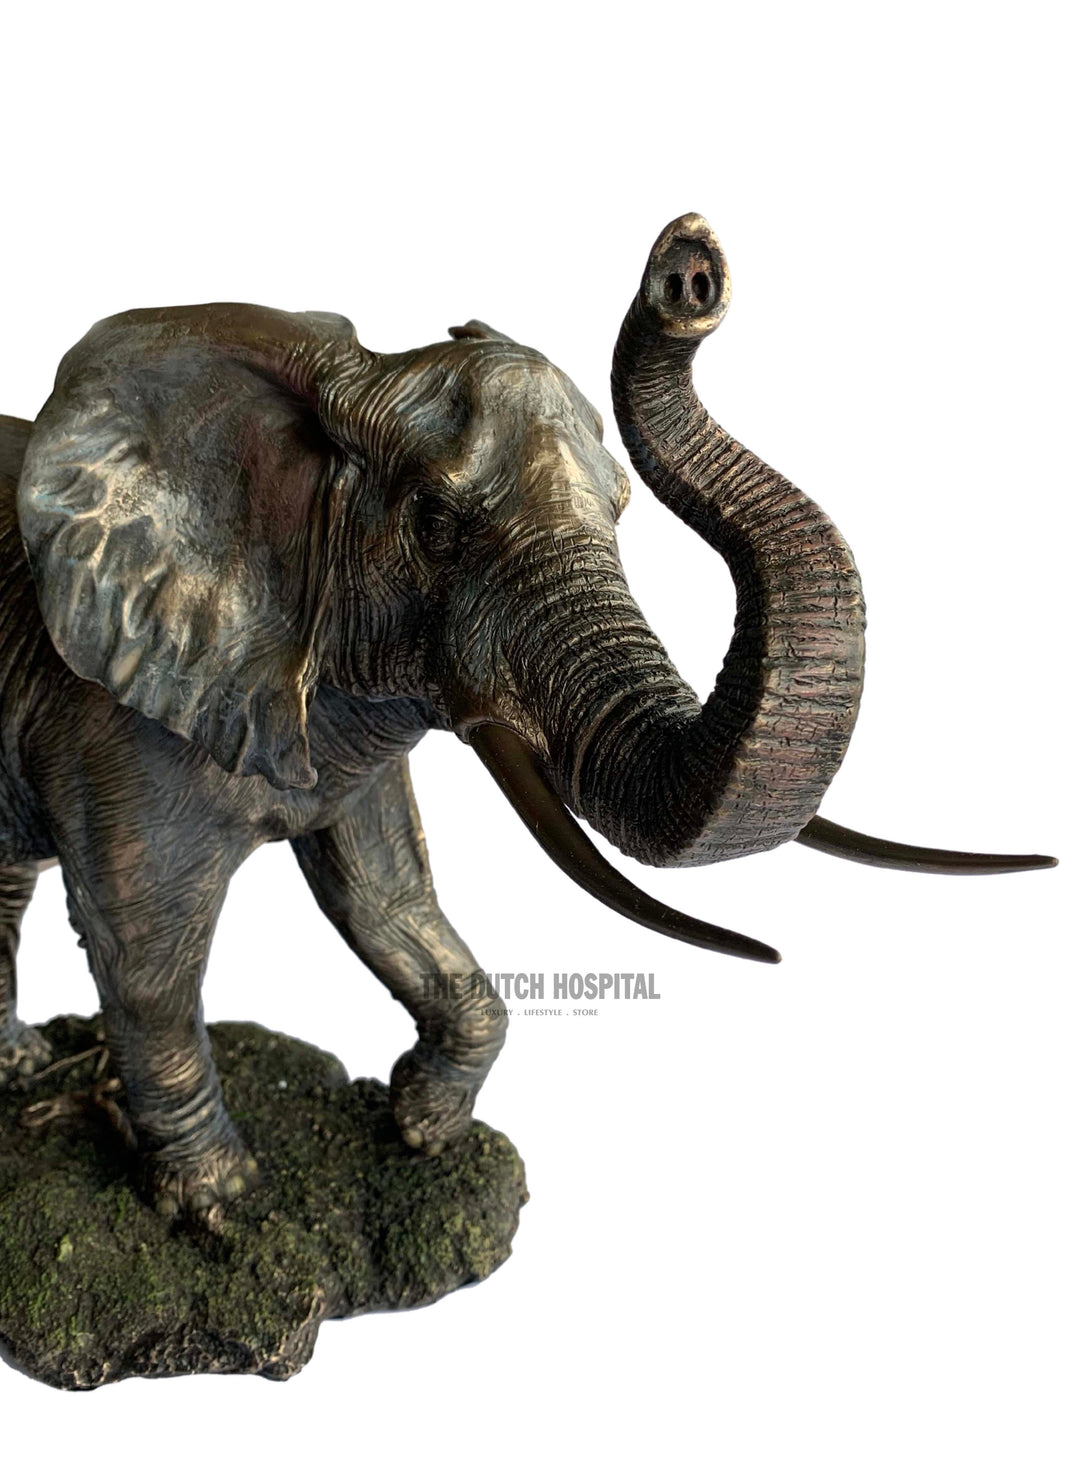 Bronze Elephant Raised Trunk,